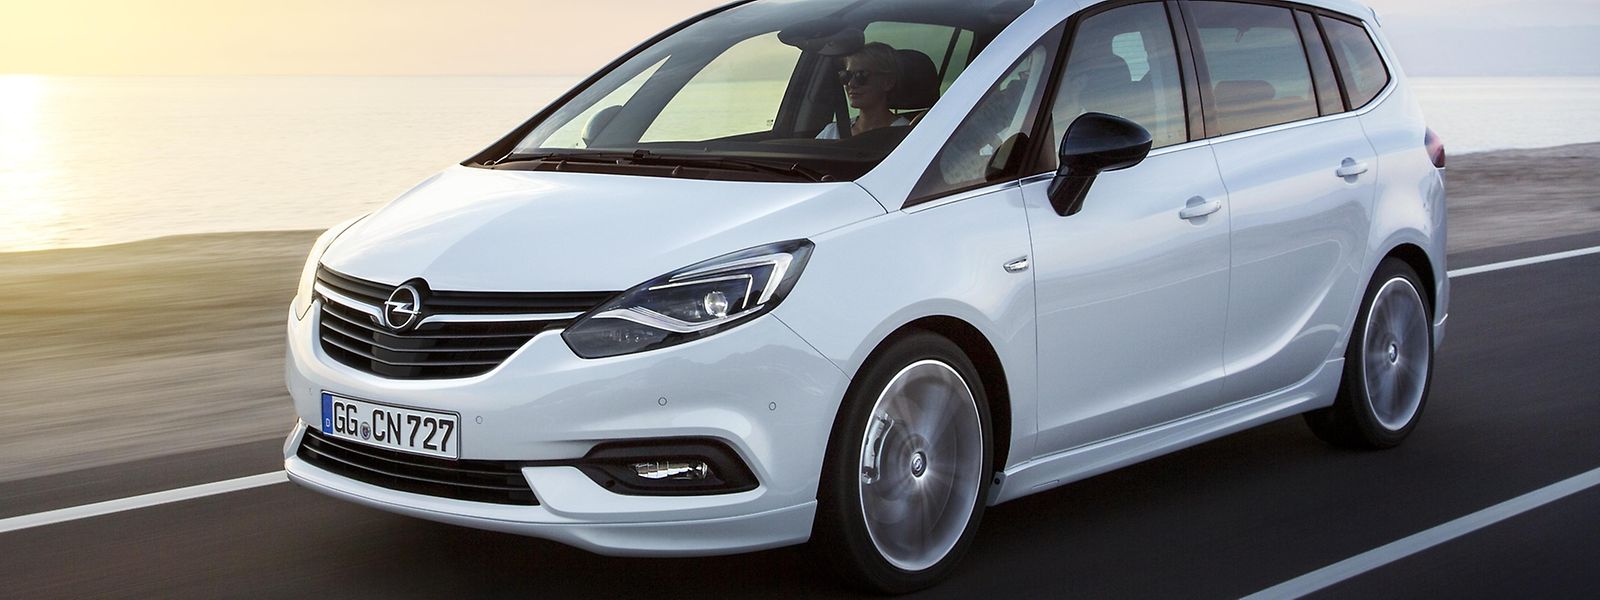 Der Boomerang-Look ist Geschichte: Die überarbeitete Version des Opel-Familienvans kommt braver, dafür aber mit einem technischen Update daher.